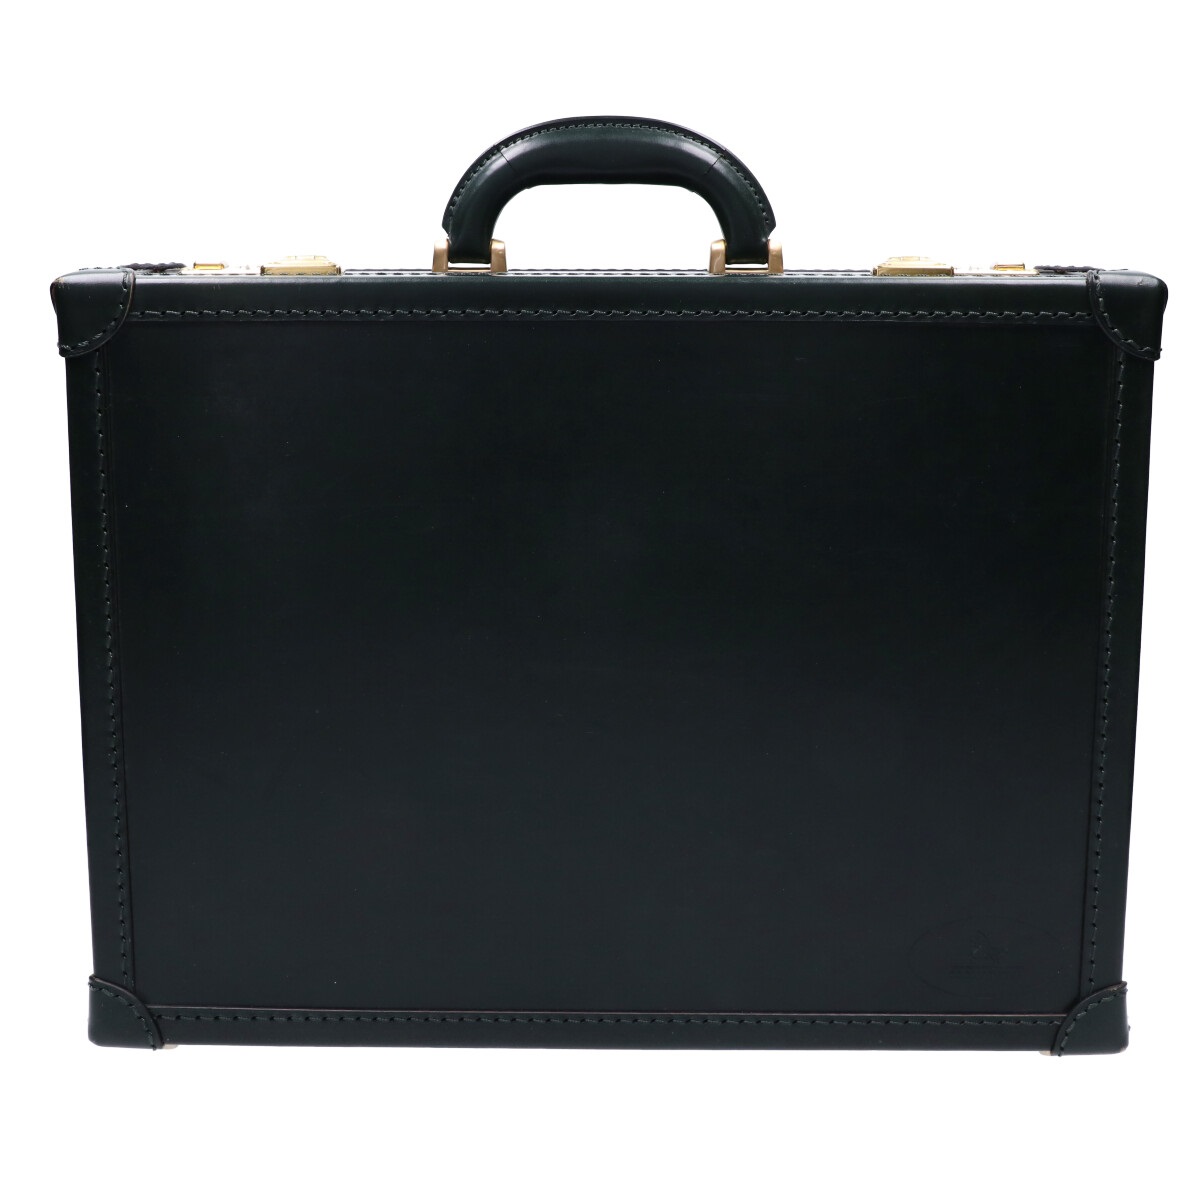 ココマイスターの43015201 ブライドル ロイヤルヘンリー ビジネスバッグの買取実績です。